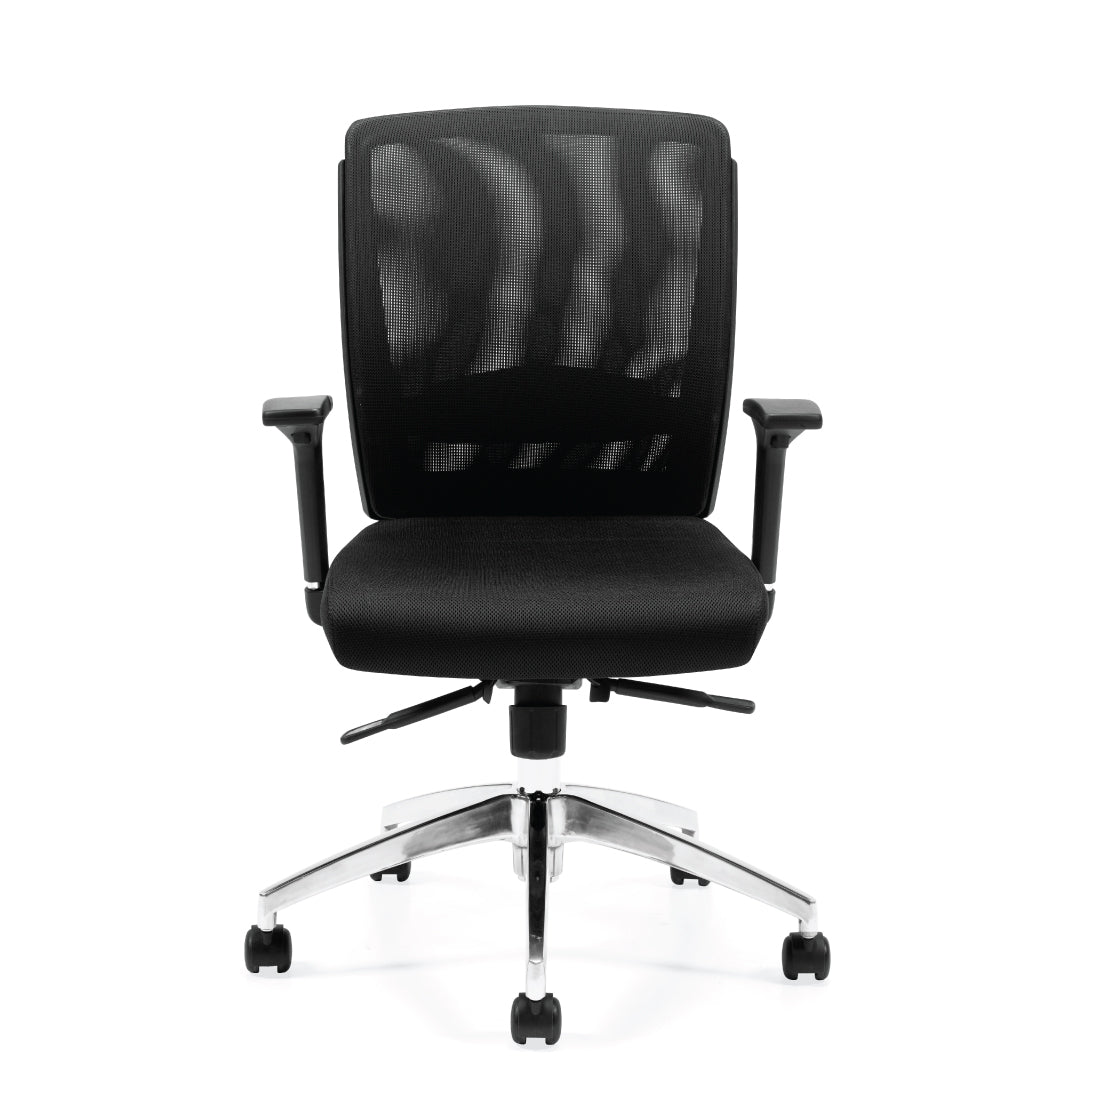 G10904B Mesh Mid Back Synchro-Tilter Chair - Kainosbuy.com